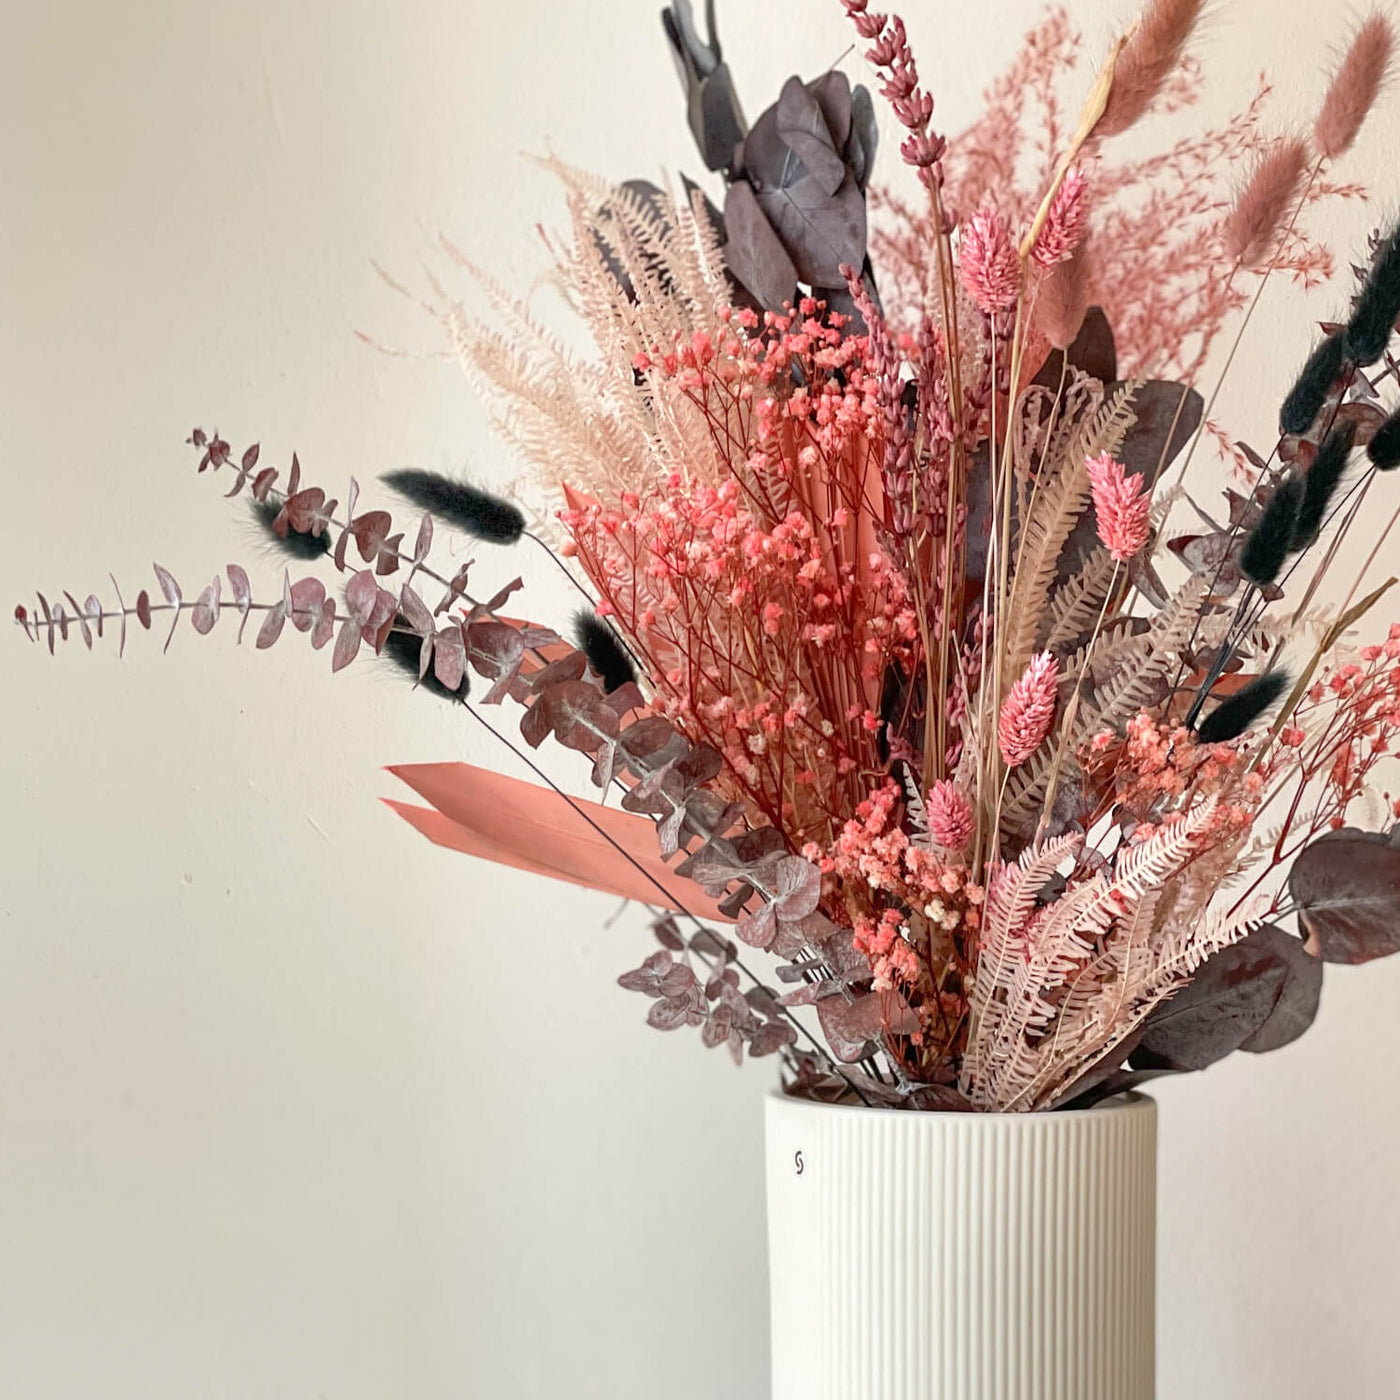 Touch of Pink: Zeitlose Eleganz in Rosatönen - Trockenblumenstrauß fürs ganze Jahr